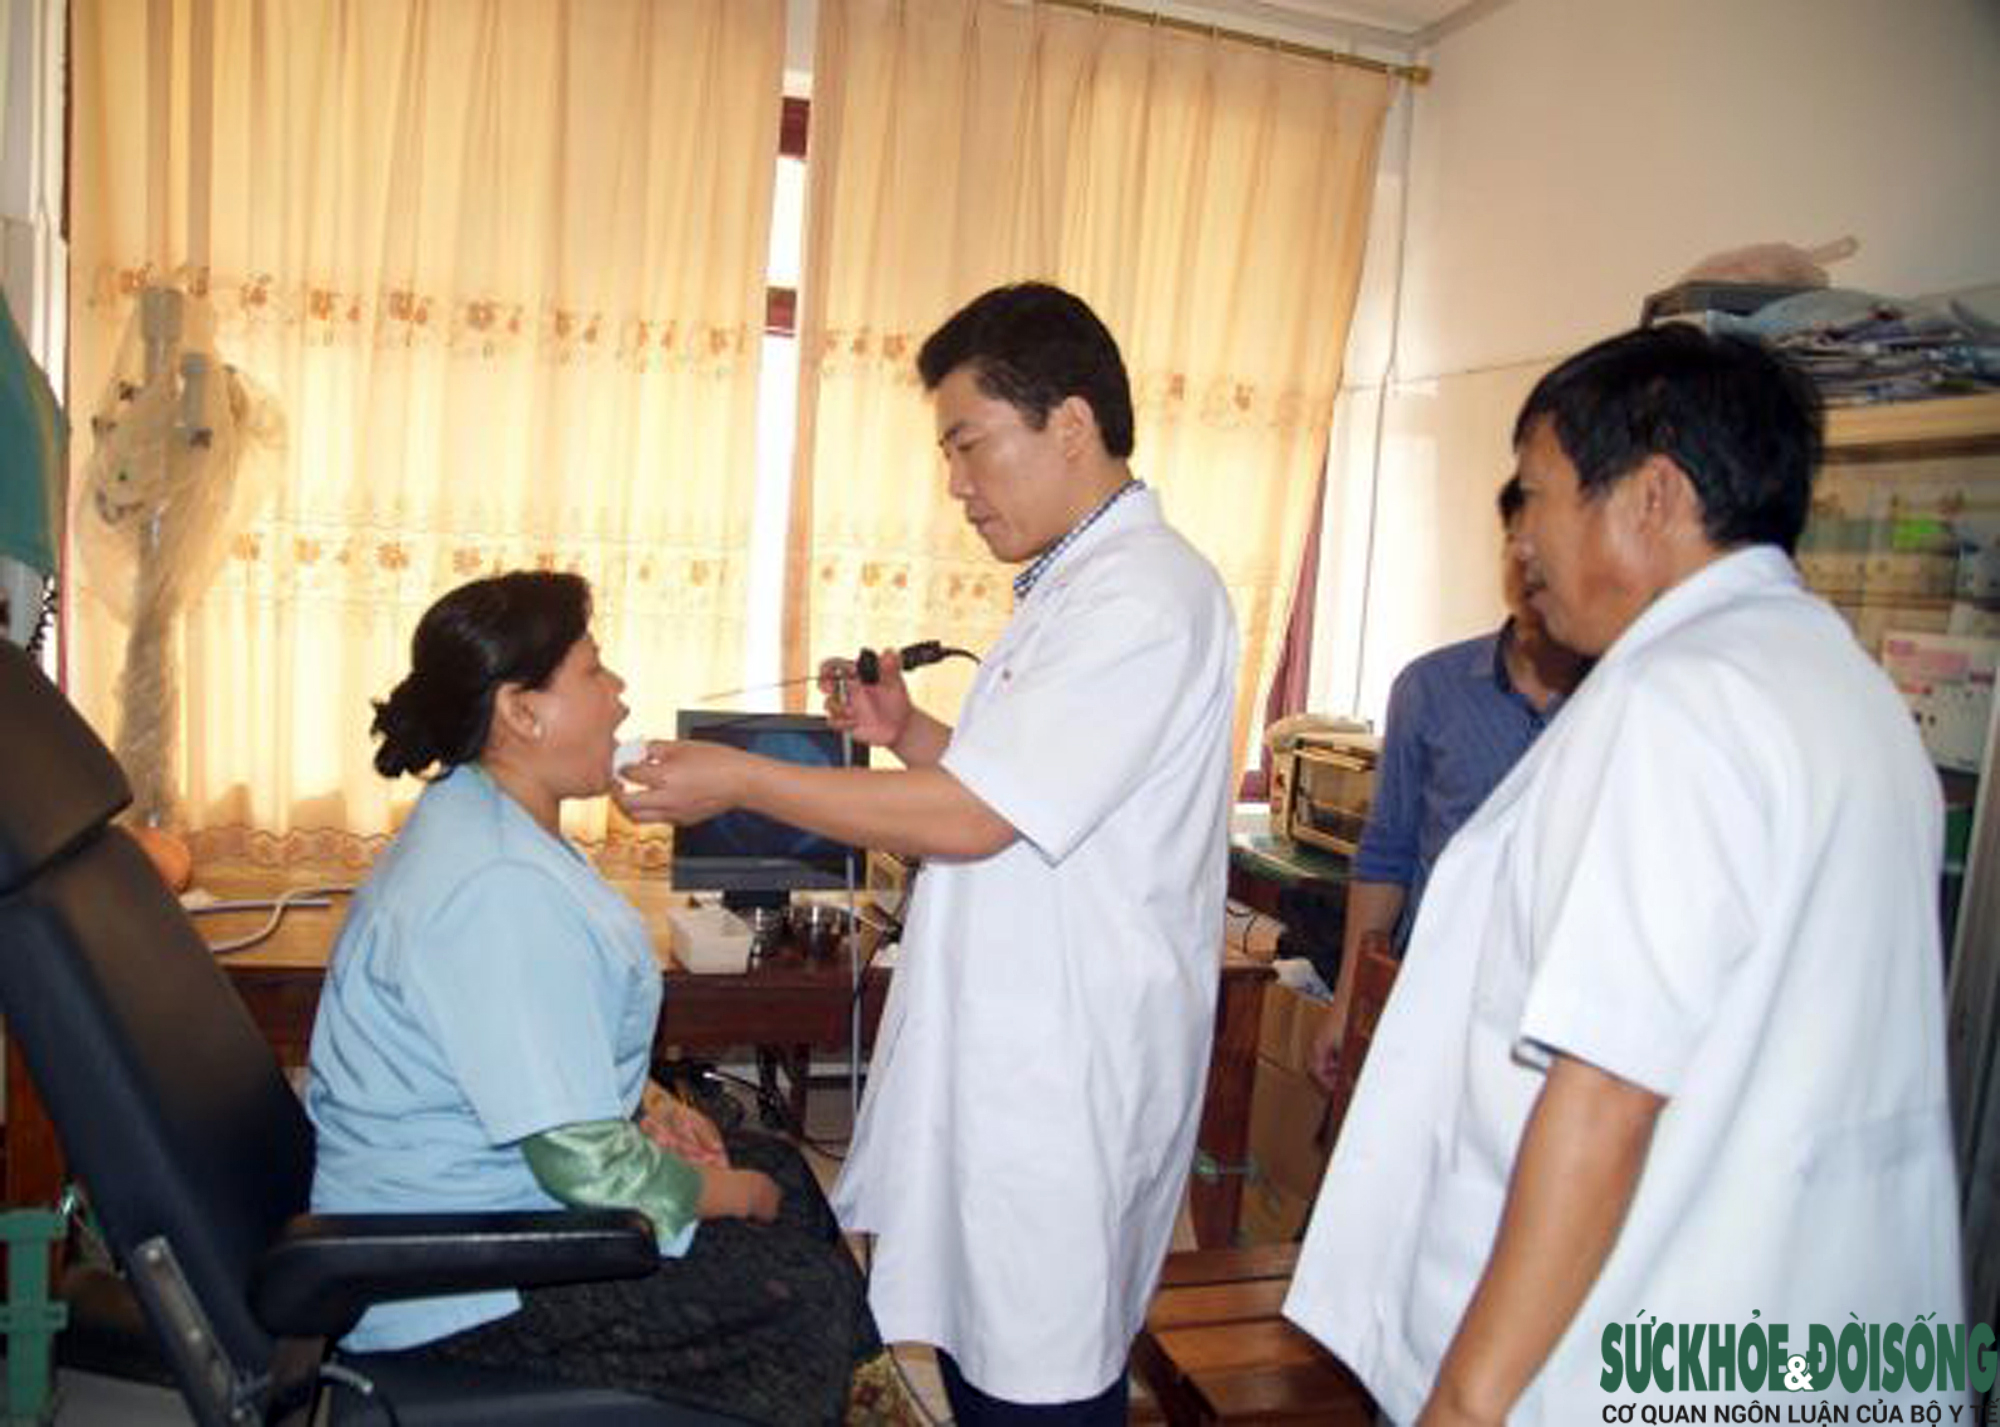  Các chuyên gia y tế Nghệ An sang thực hiện đào tạo và khám chữa bệnh cho bệnh nhân Lào tại Bệnh viện Đa khoa Xiêng Khoảng (Lào)